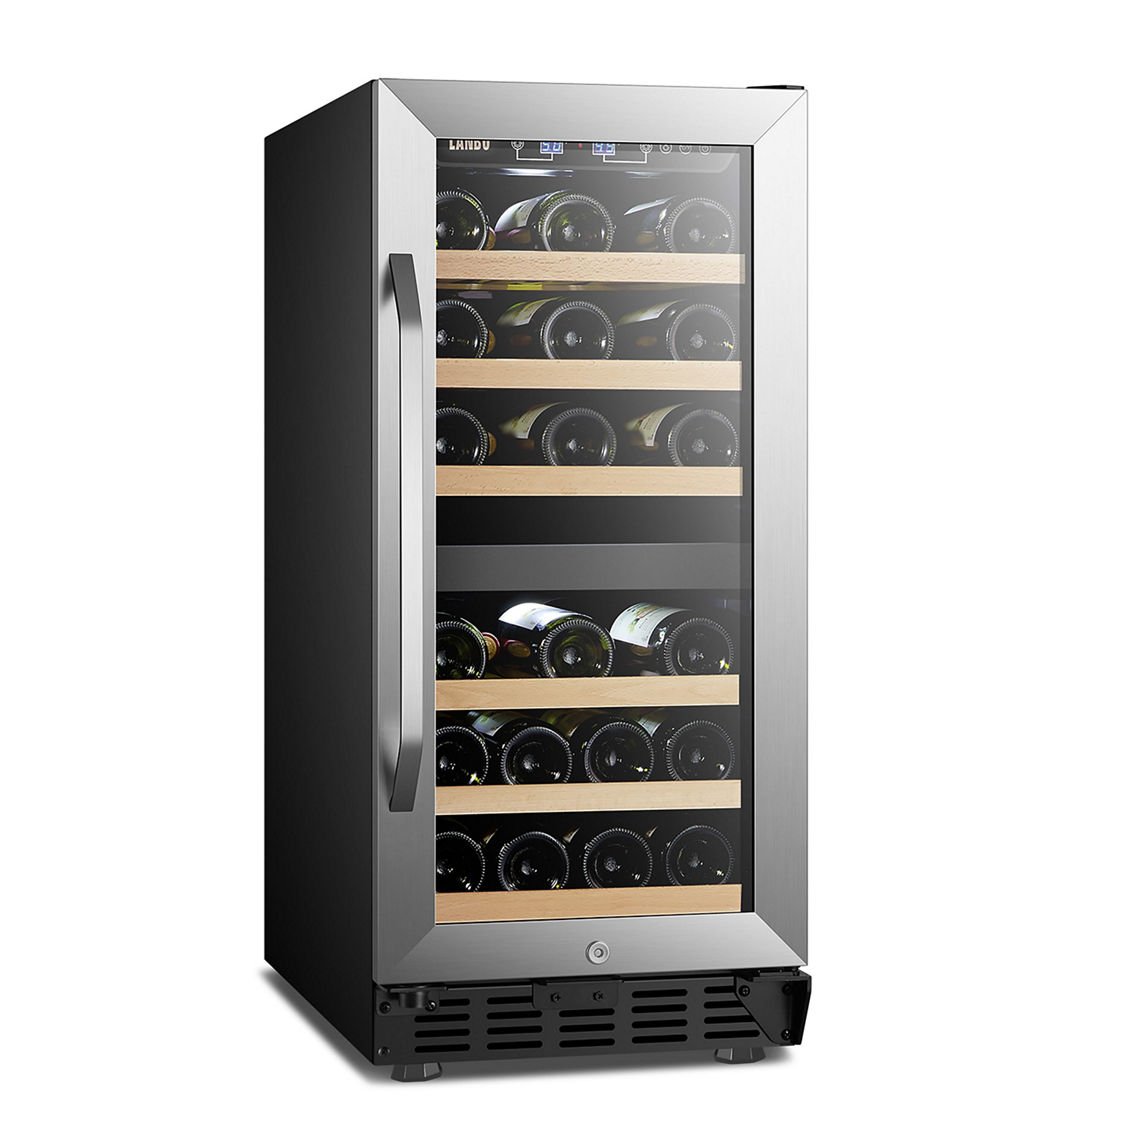 Lanbo 15 Inch Wine Cooler Refrigerator, 26 Bottle - Image 2 of 5